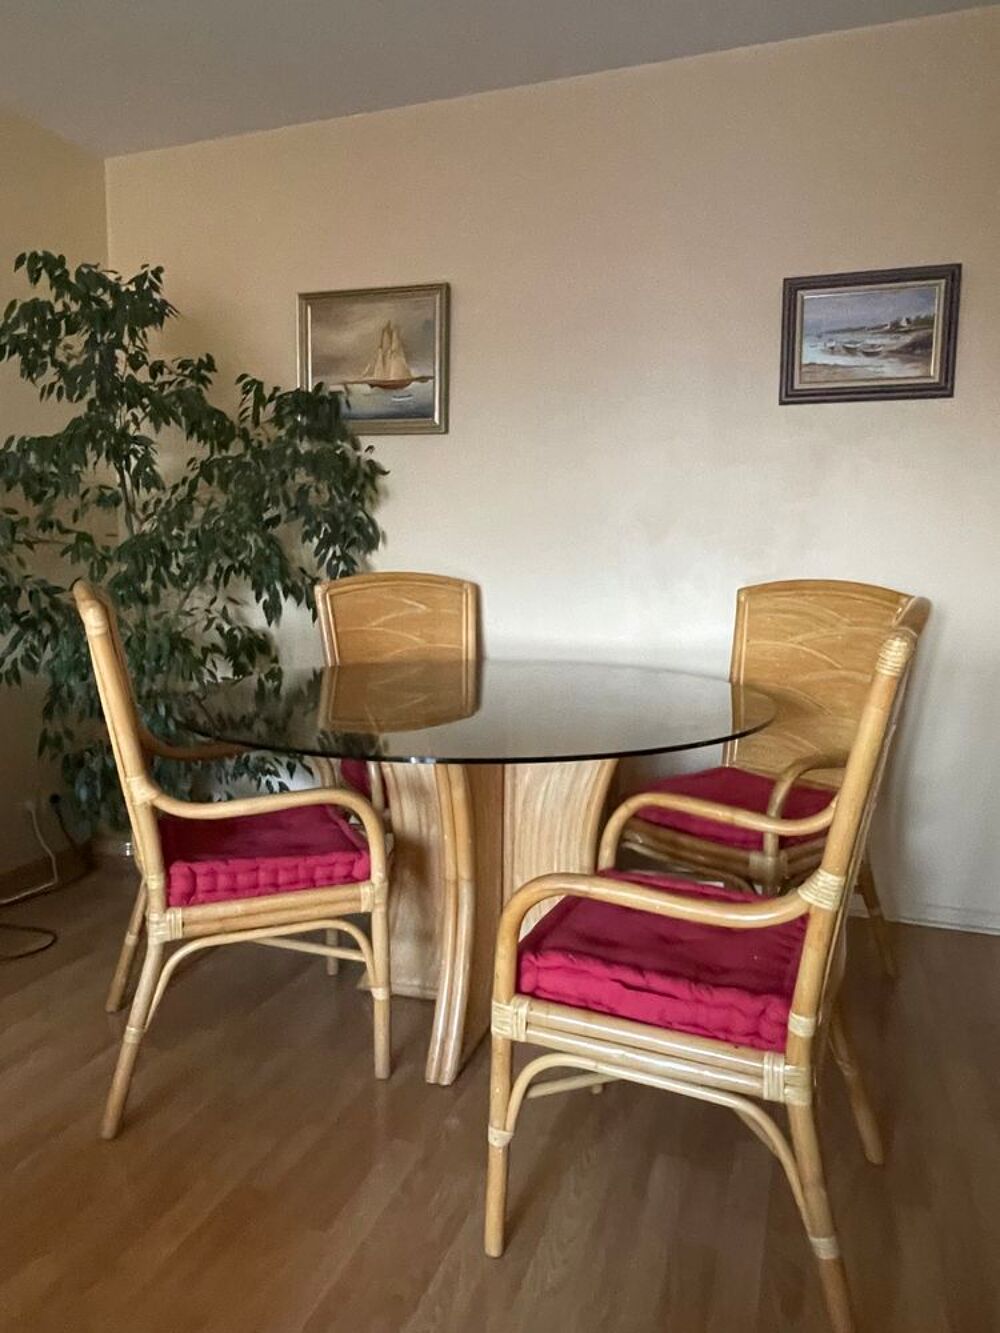 Table et 4 chaises Meubles